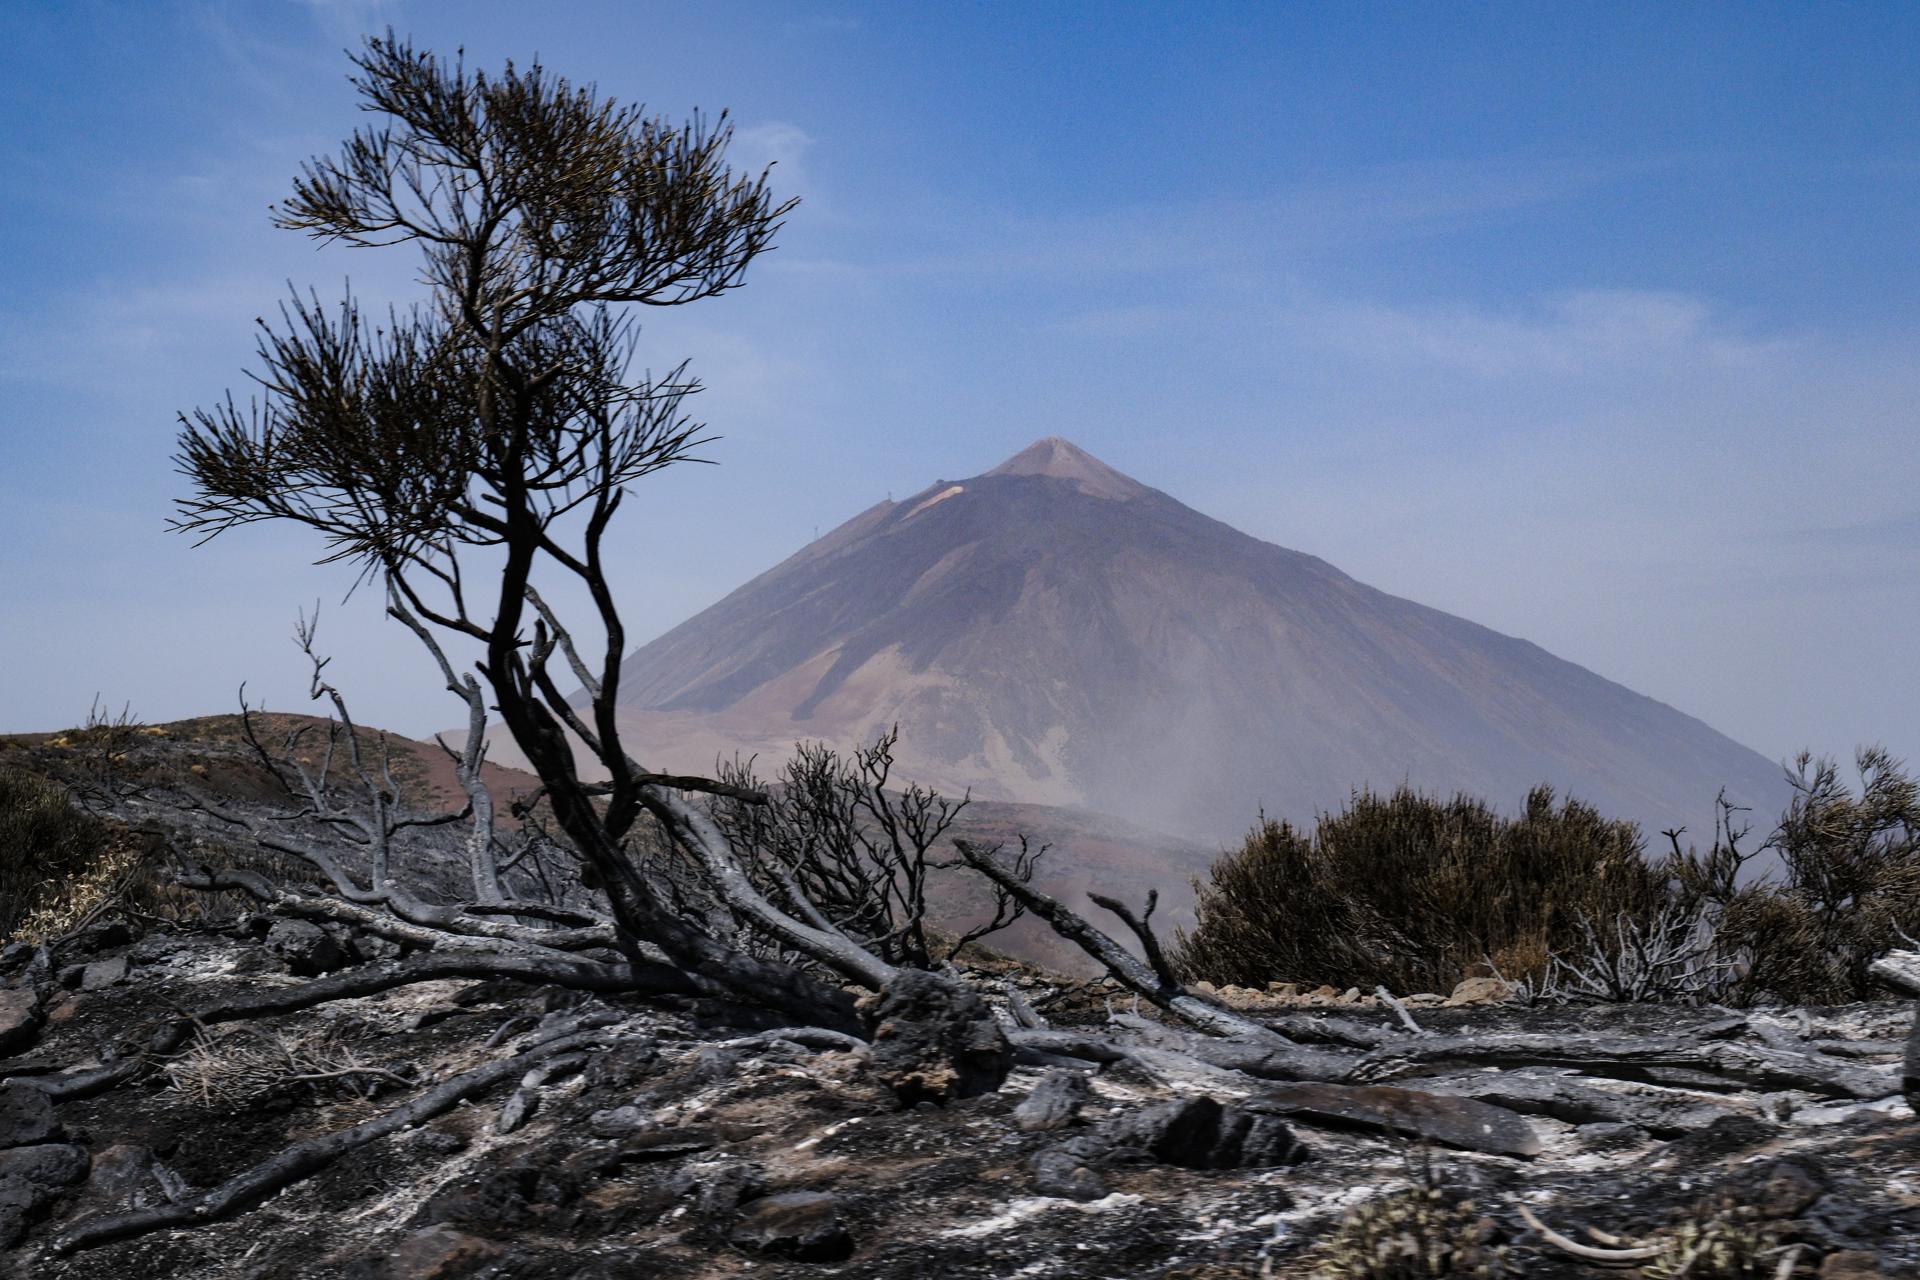 Foto tomada el 24 de agosto en el Parque Nacional del Teide, en una de las zonas quemadas por el incendio que comenzó en Arafo. EFE/Alberto Valdés